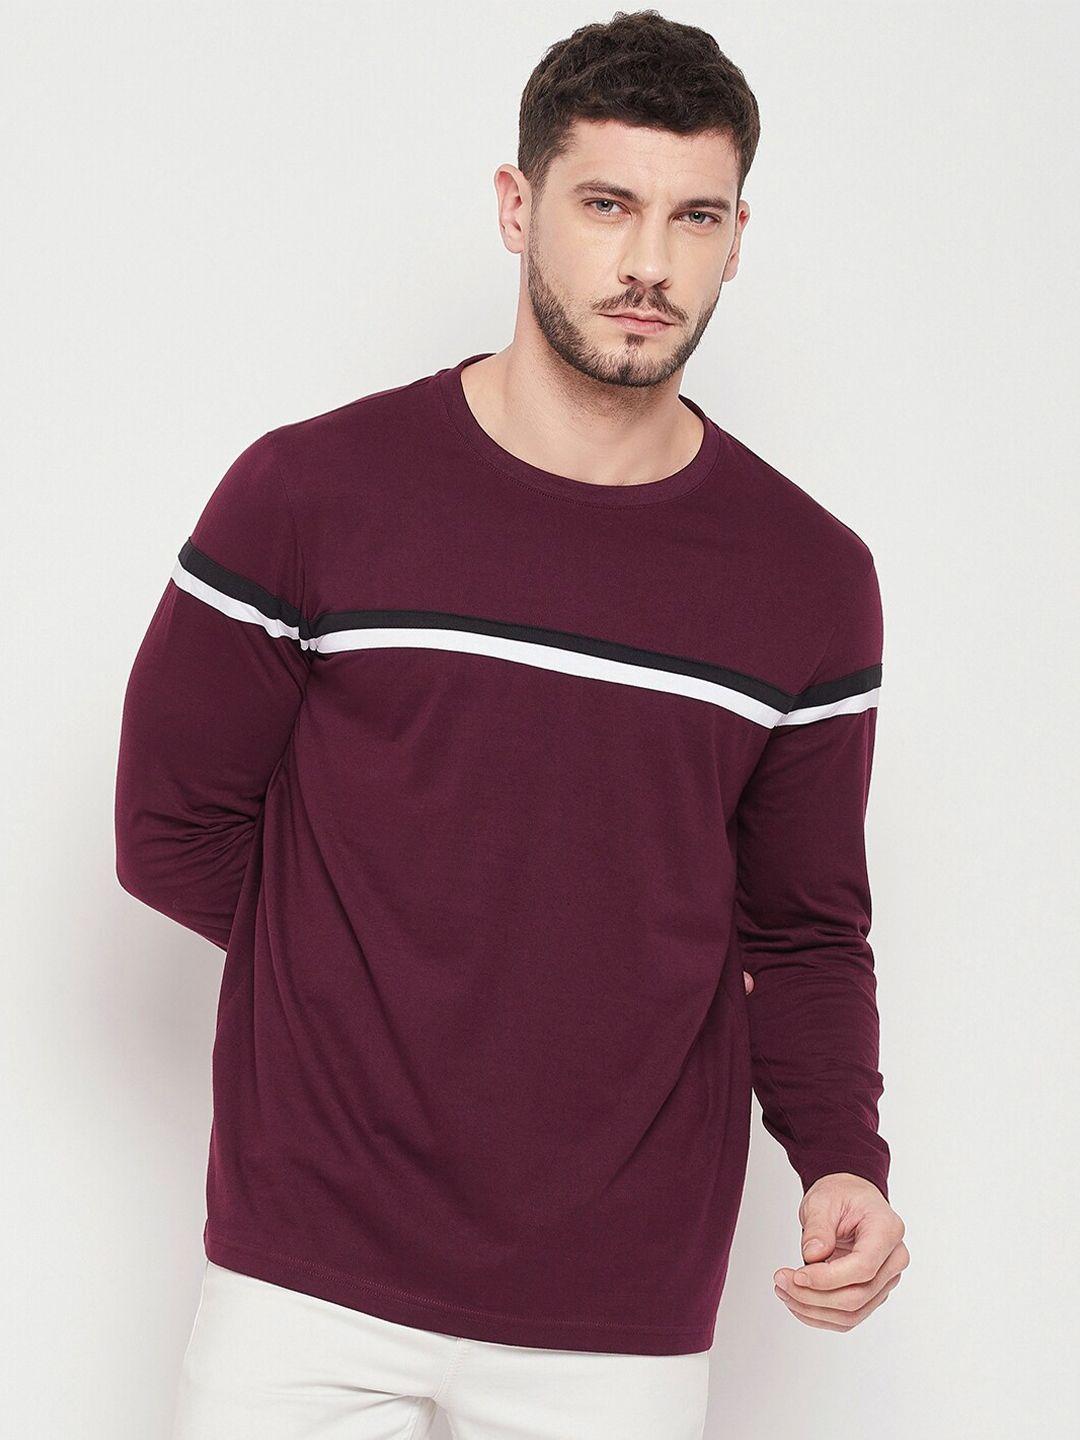 strop-men-maroon-cotton-striped-t-shirt